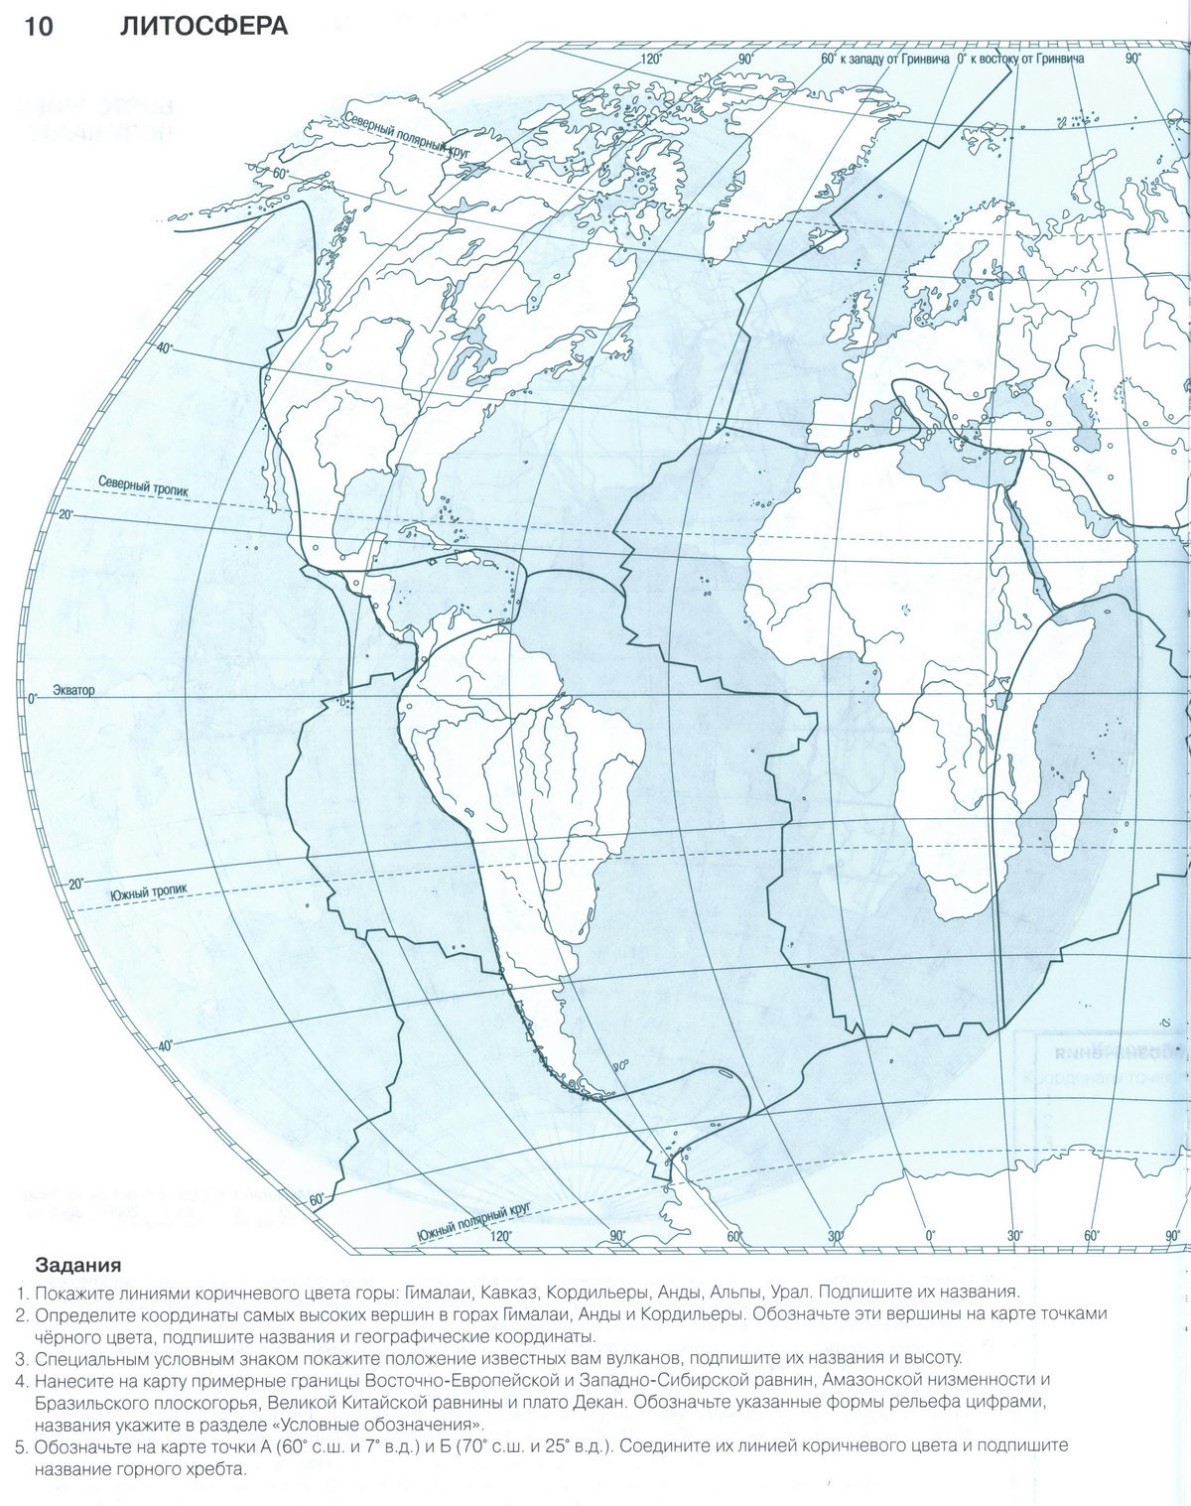 Литосфера - скачать и распечатать контурную карту 6 класс география стр 10- Решебник